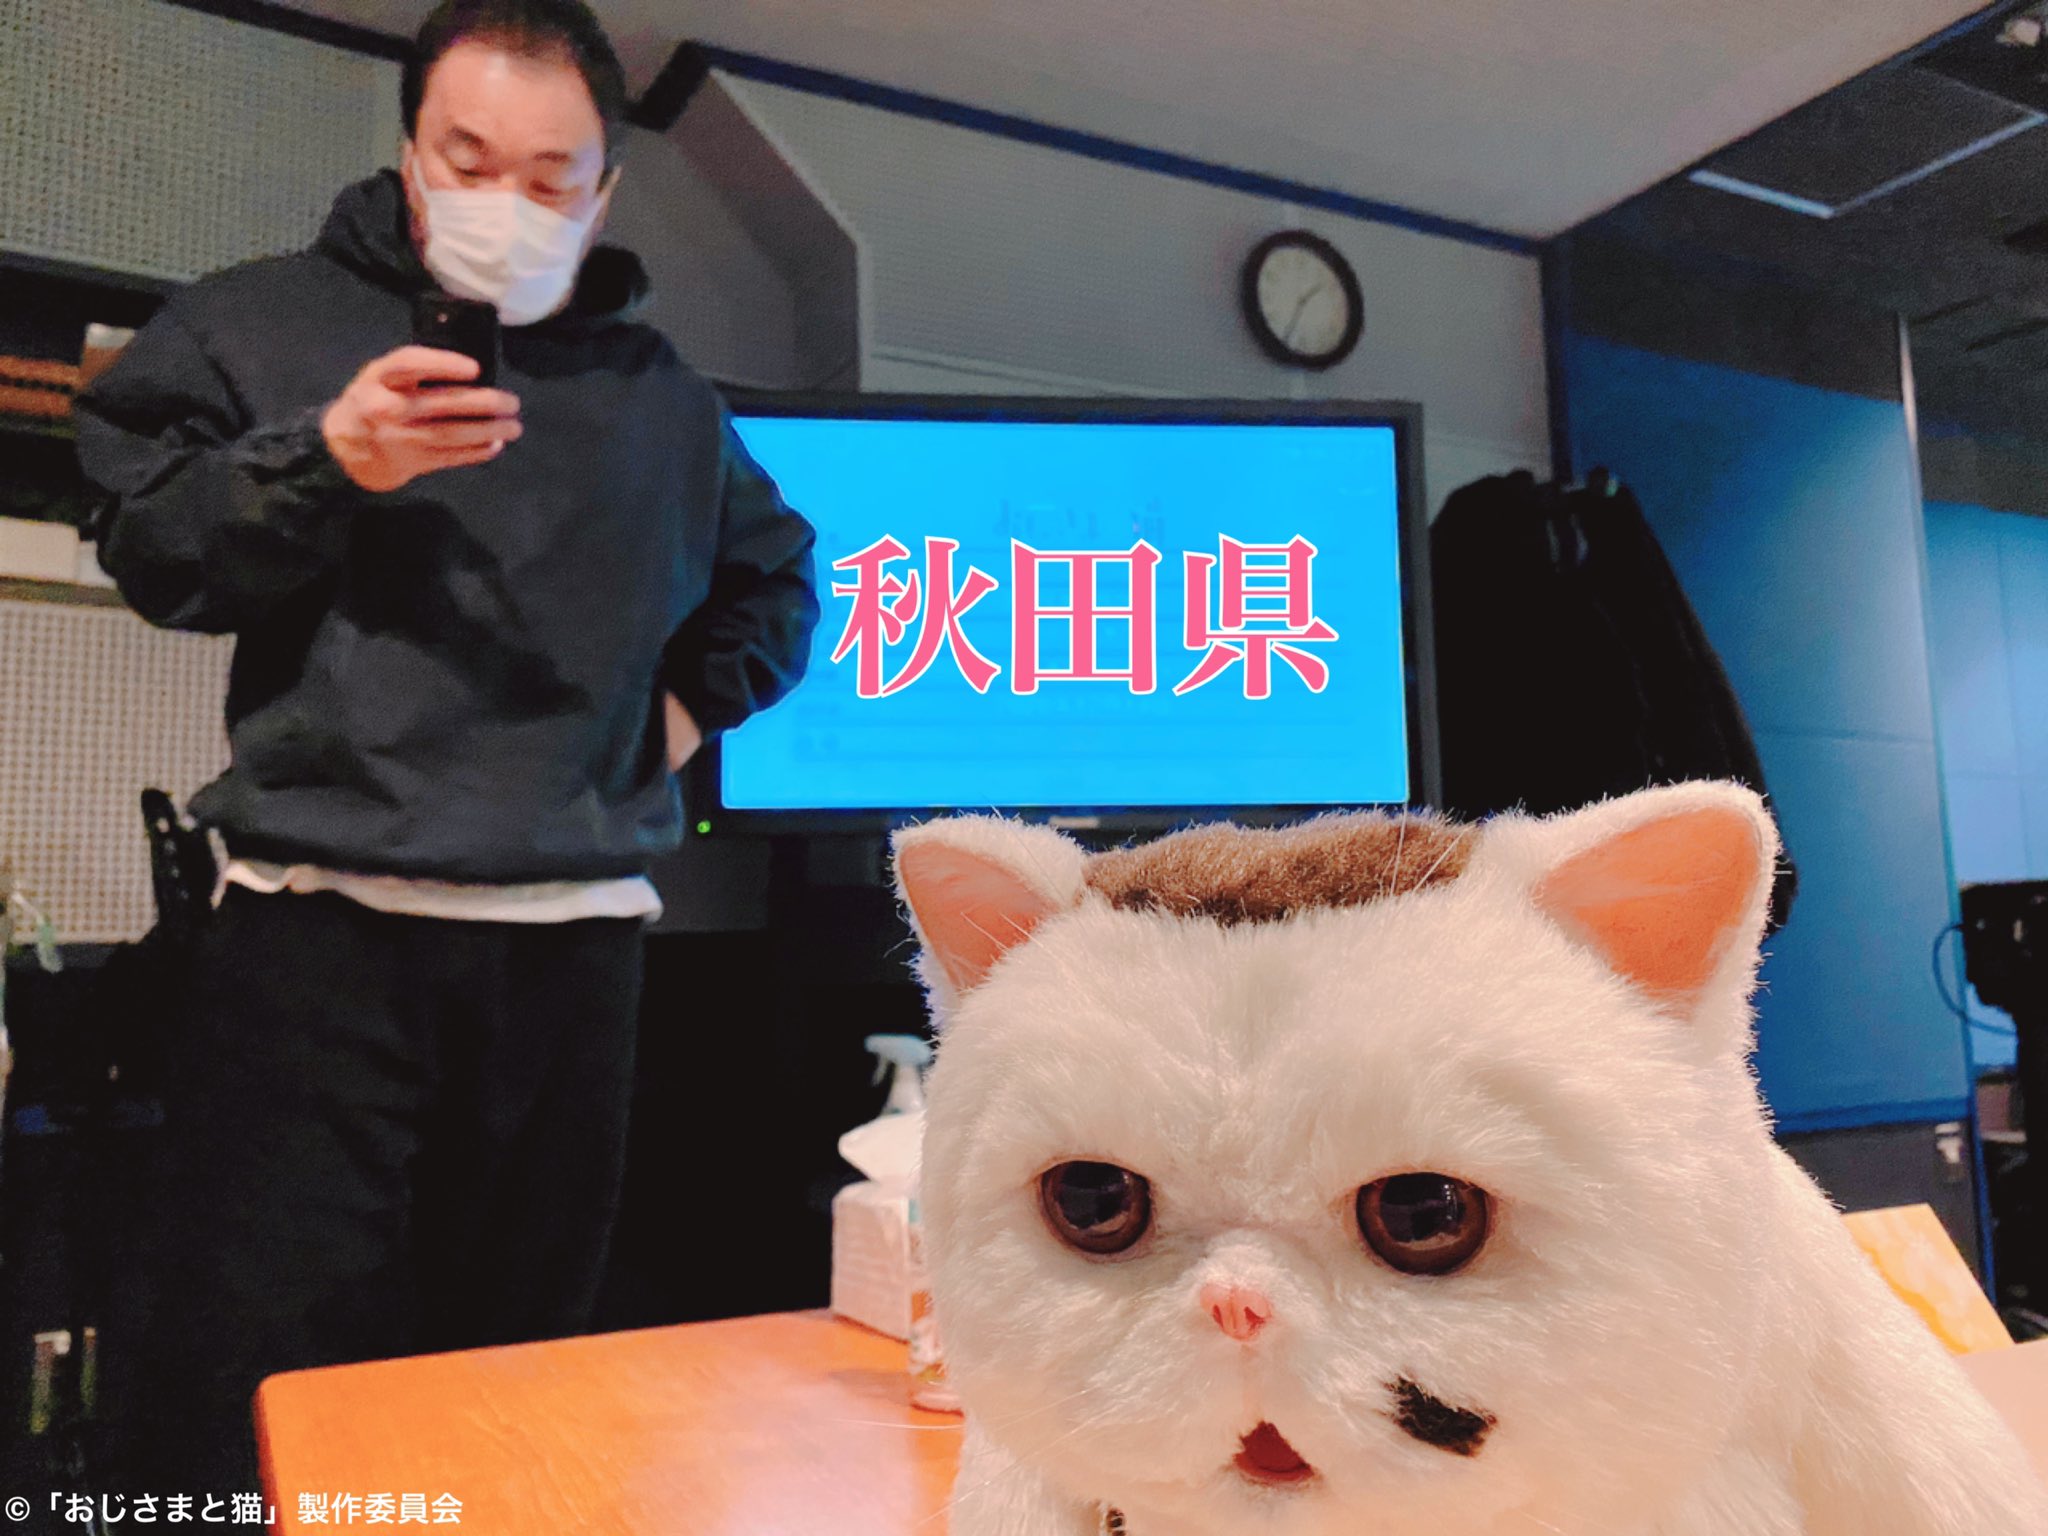 おじ猫 - Twitter Search / Twitter